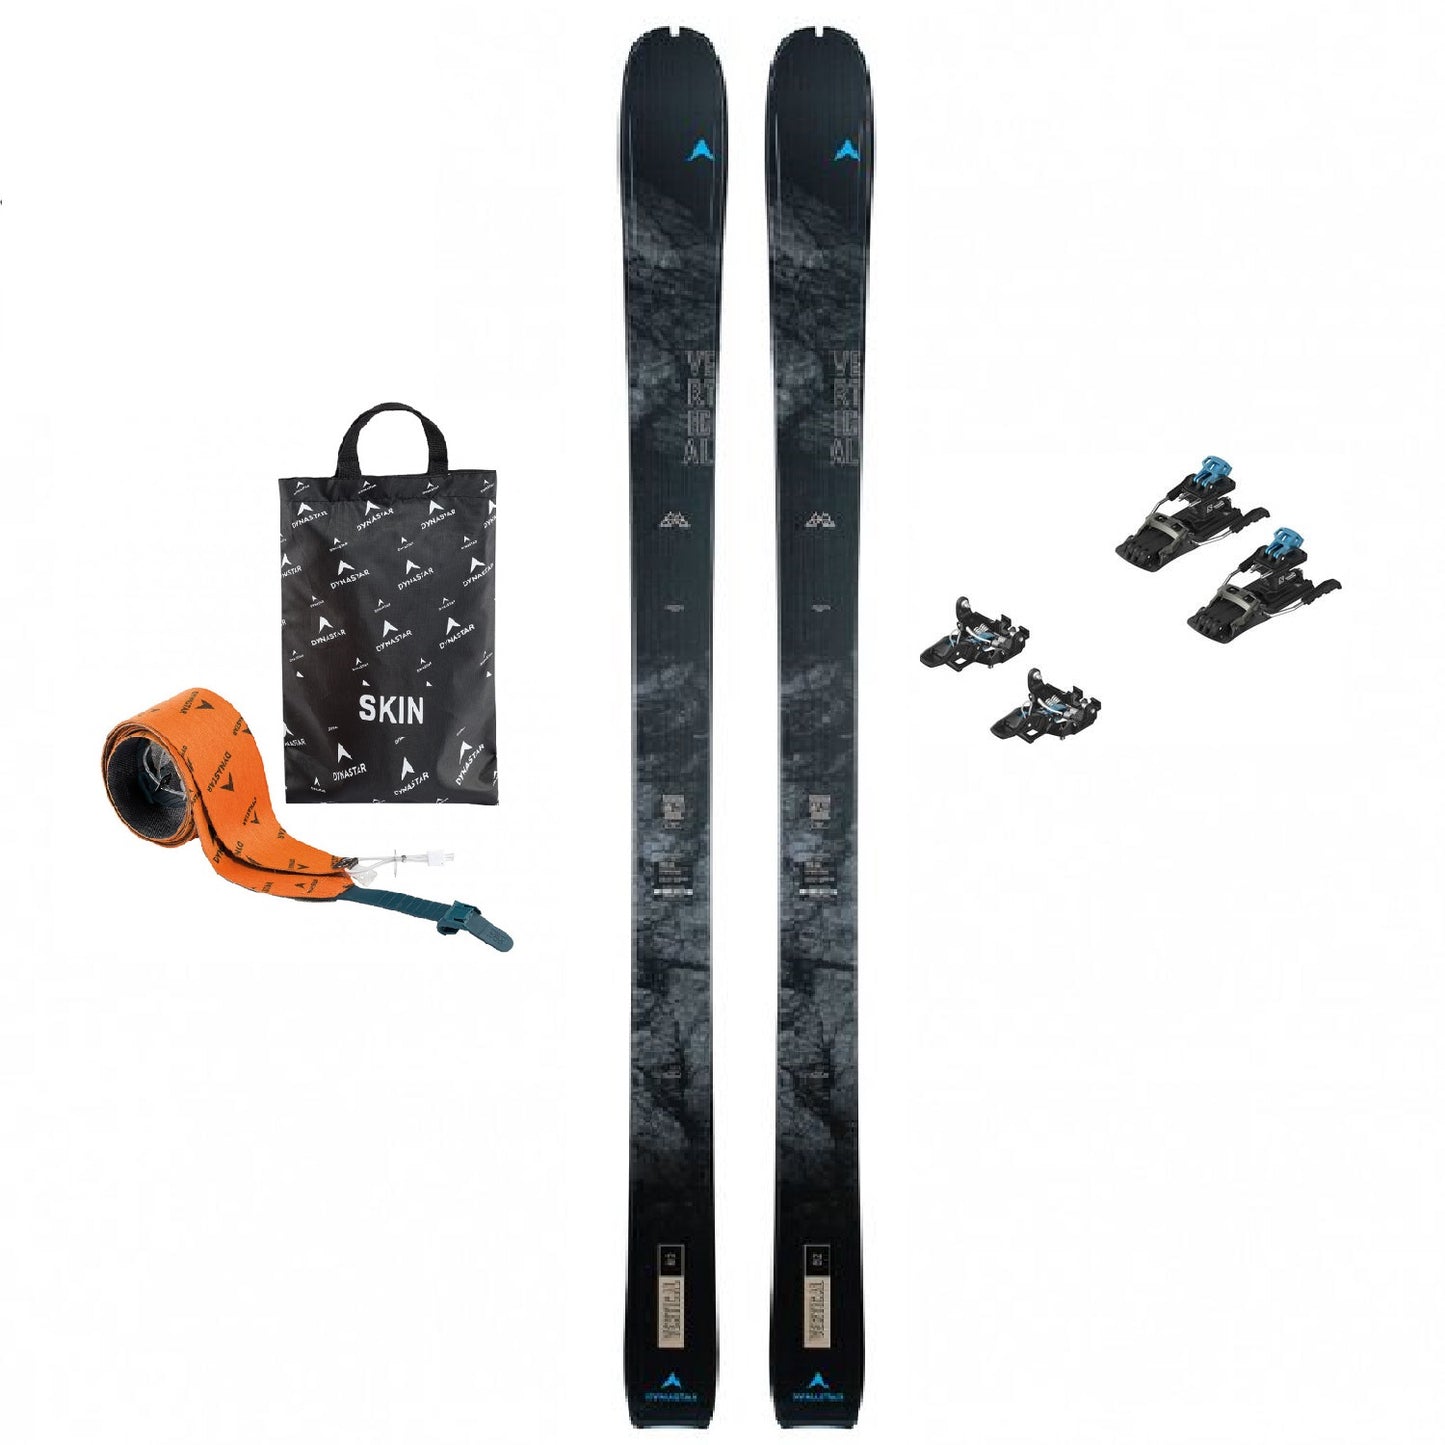 Noleggio scialpinismo prezzi promozionale Dynastar M-tour Vertical anima in legno 